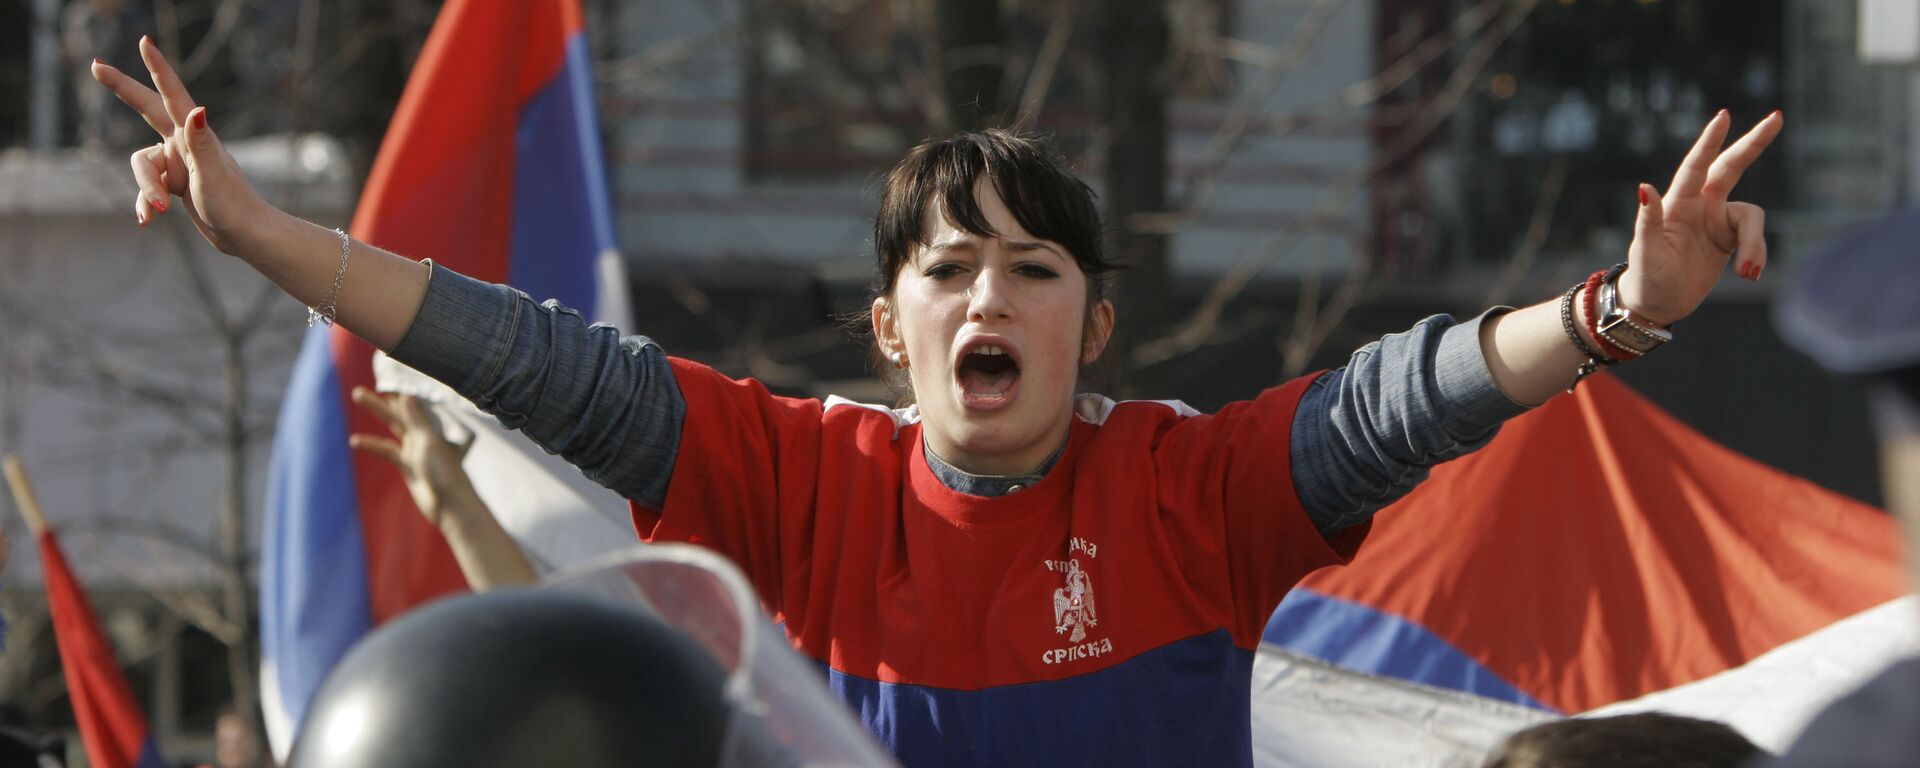 Joven de la República Srpska durante protestas contra la declaración de independencia de Kosovo. Banja Luka, 21 de febrero de 2008. - Sputnik Mundo, 1920, 30.06.2017